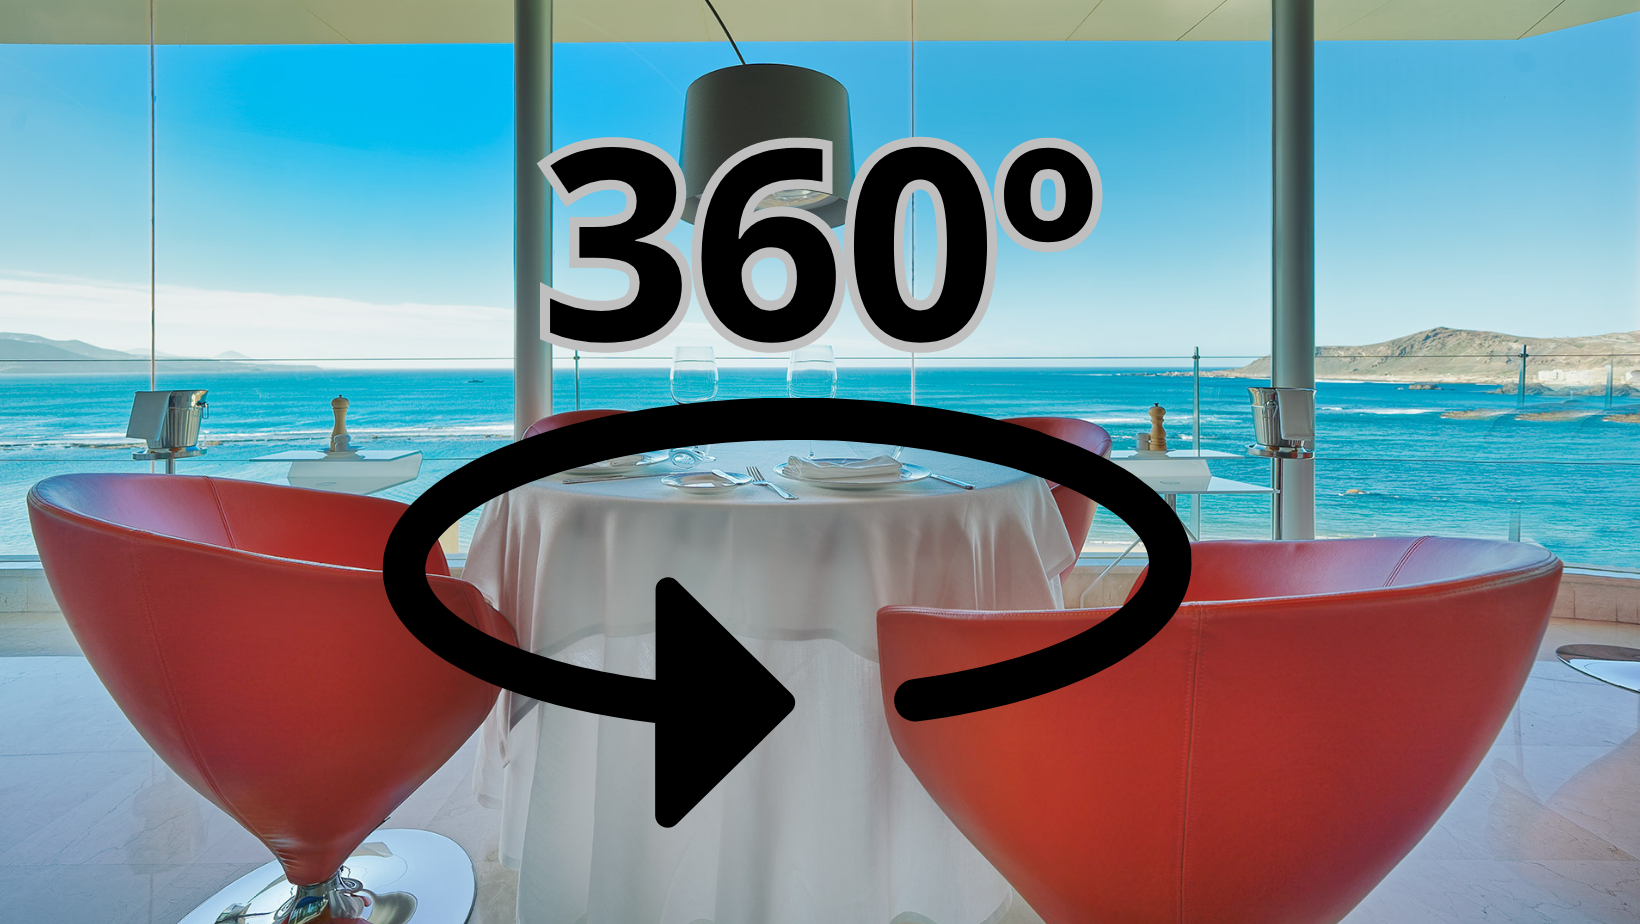 Visualiza el hotel con la experiencia 360º